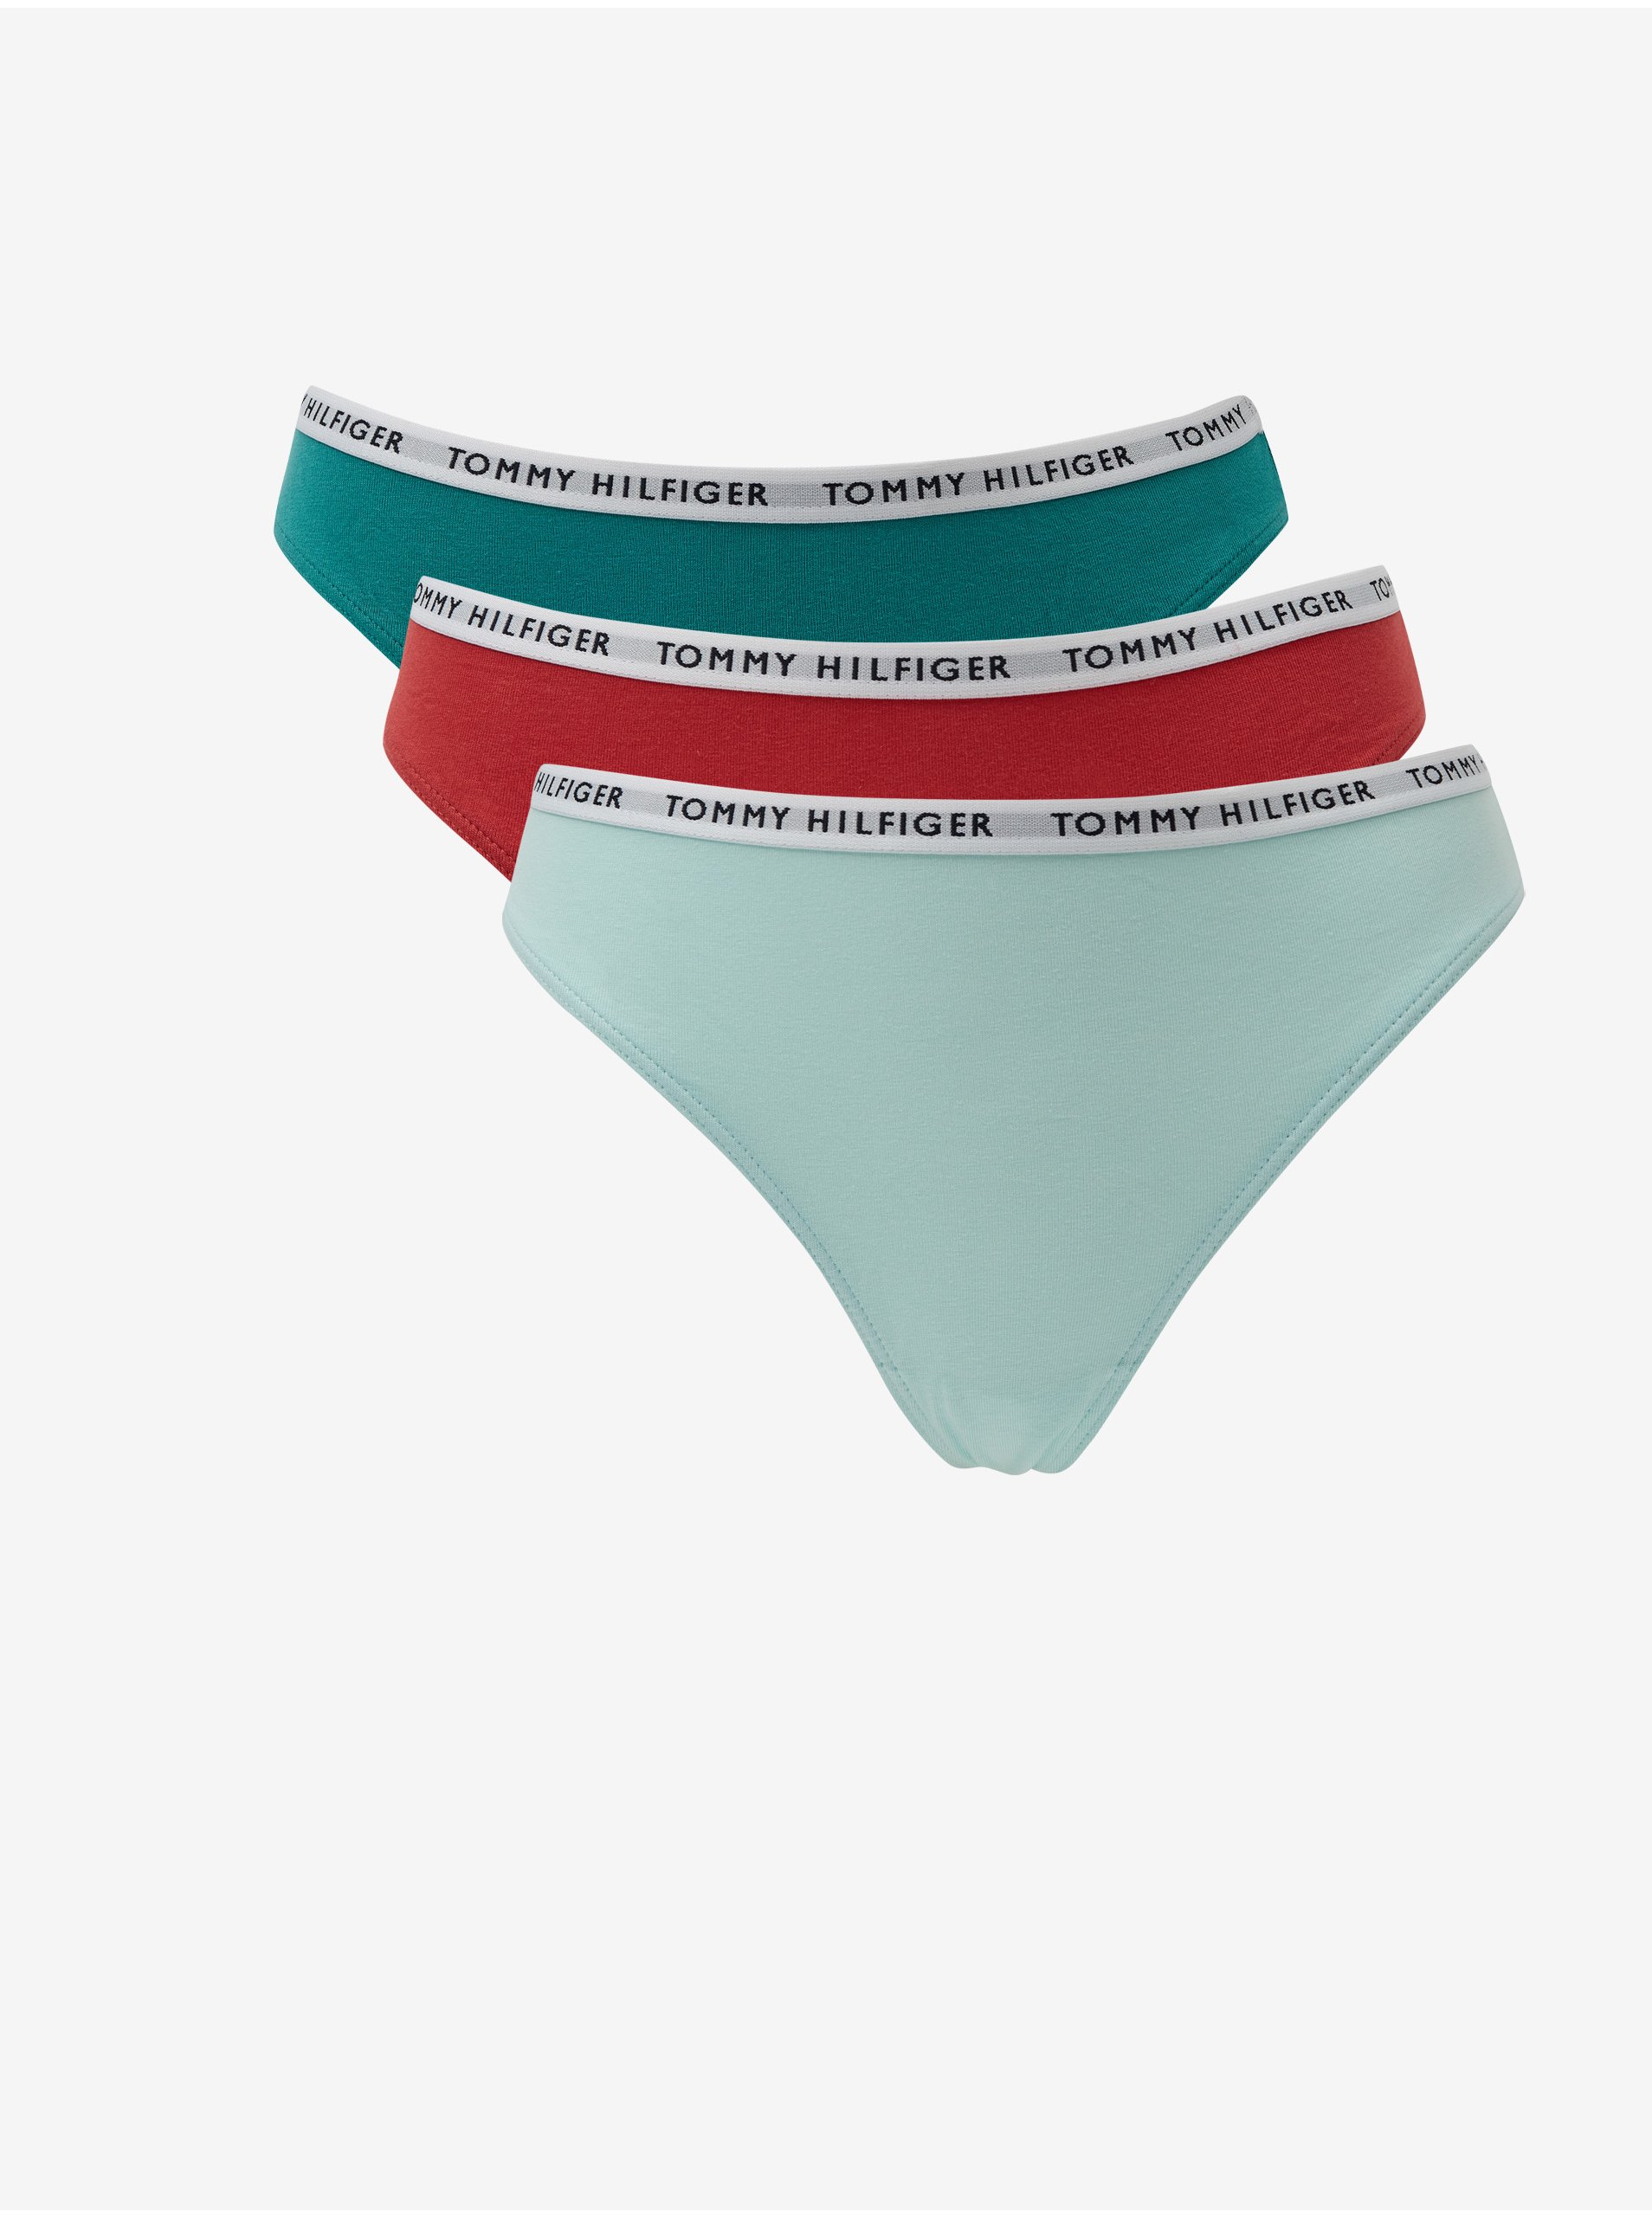 E-shop Sada tří tang ve světle modré, zelené a červené barvě tang Tommy Hilfiger Underwear